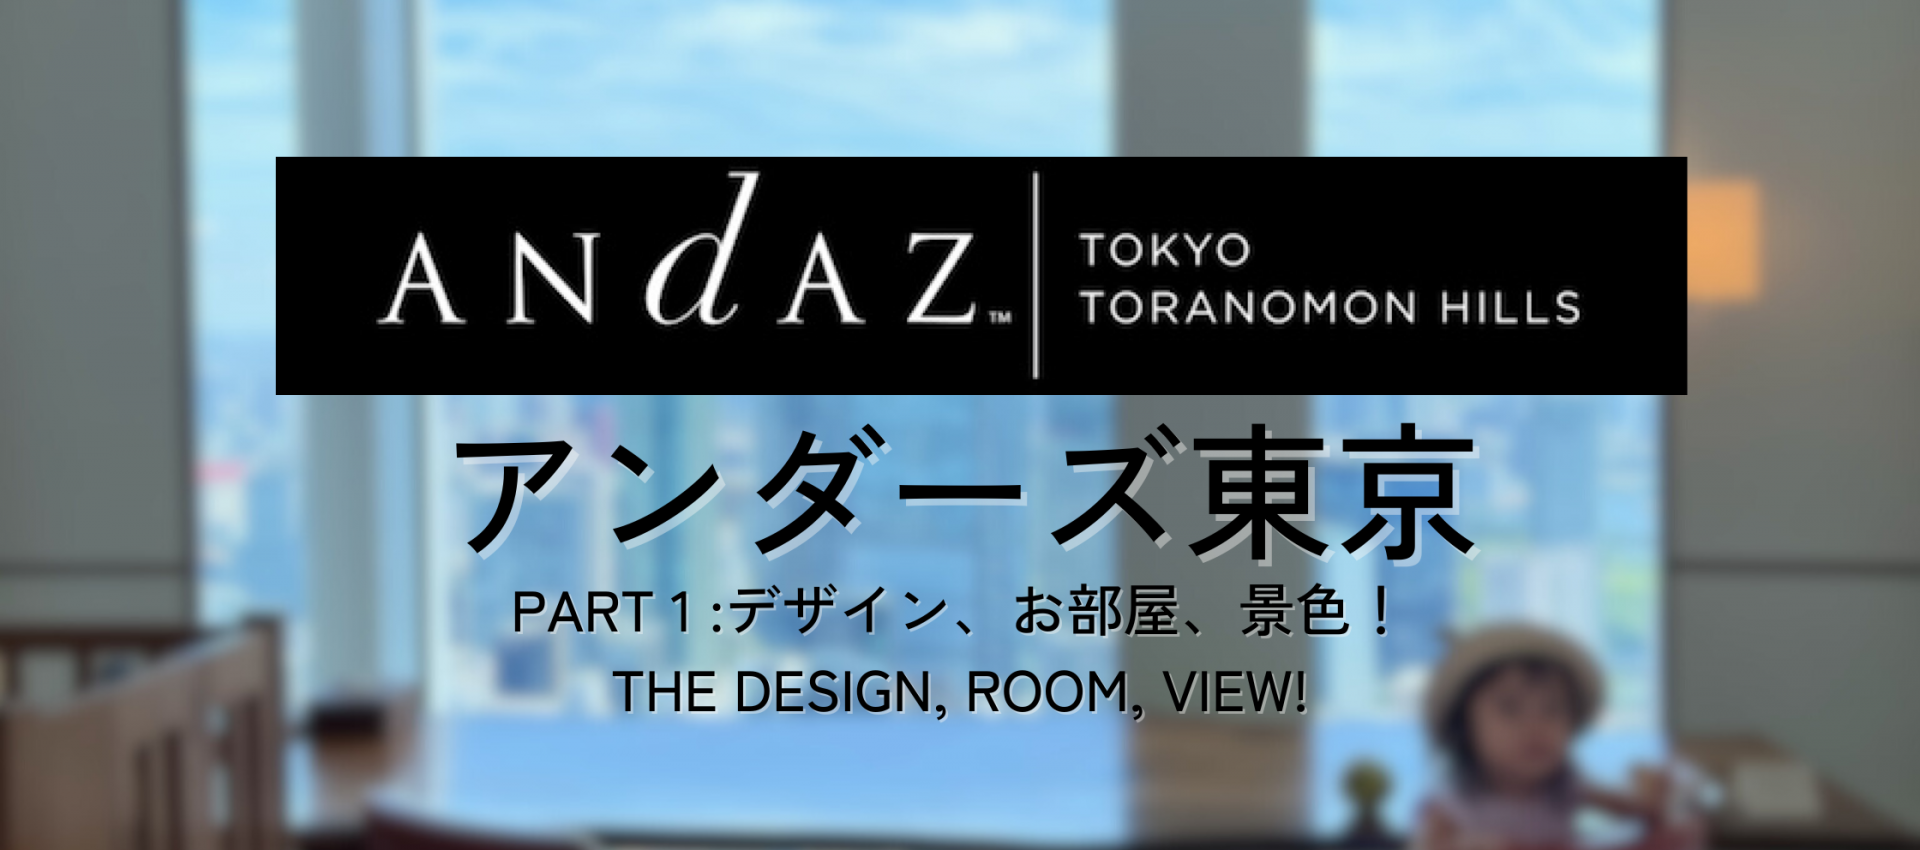 一泊19万?! アンダーズ東京に家族でお得に宿泊。ラグジュアリーデザインの客室やラウンジ,屋上  Andaz Tokyo: the Luxurious Design Hotel! A Family Trip